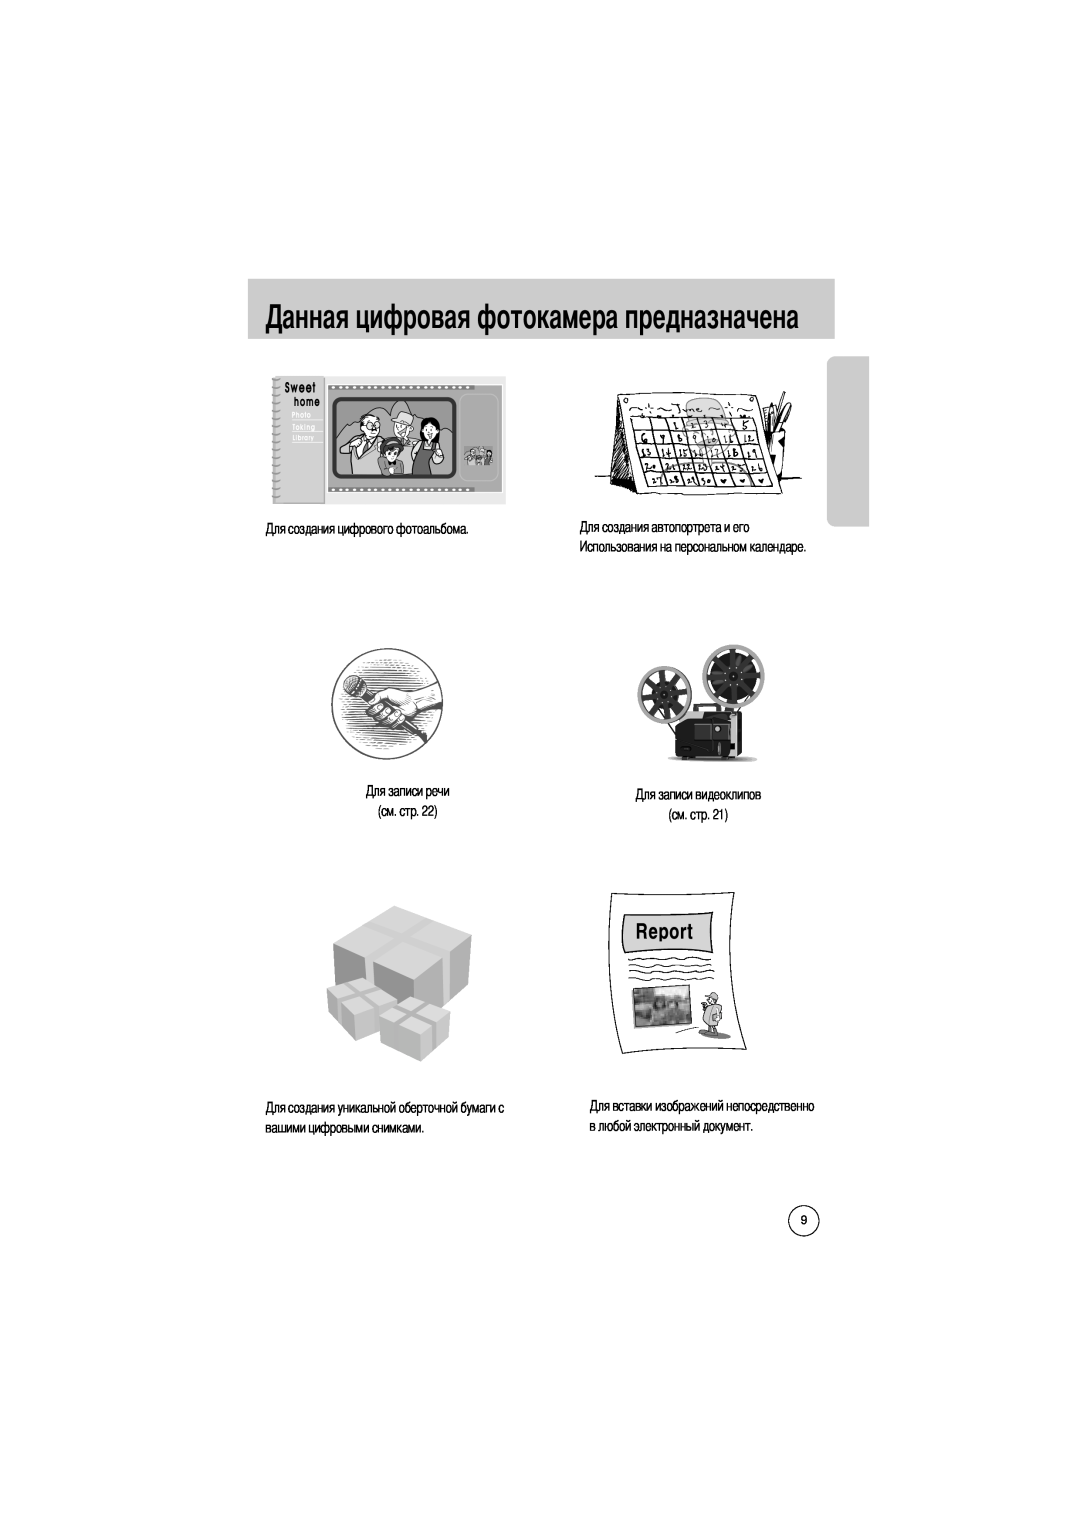 Samsung EC-UCA4ZSBA/DE manual токамера предназначена, см. стр, вашими цифровыми снимками, в любой электронный документ 